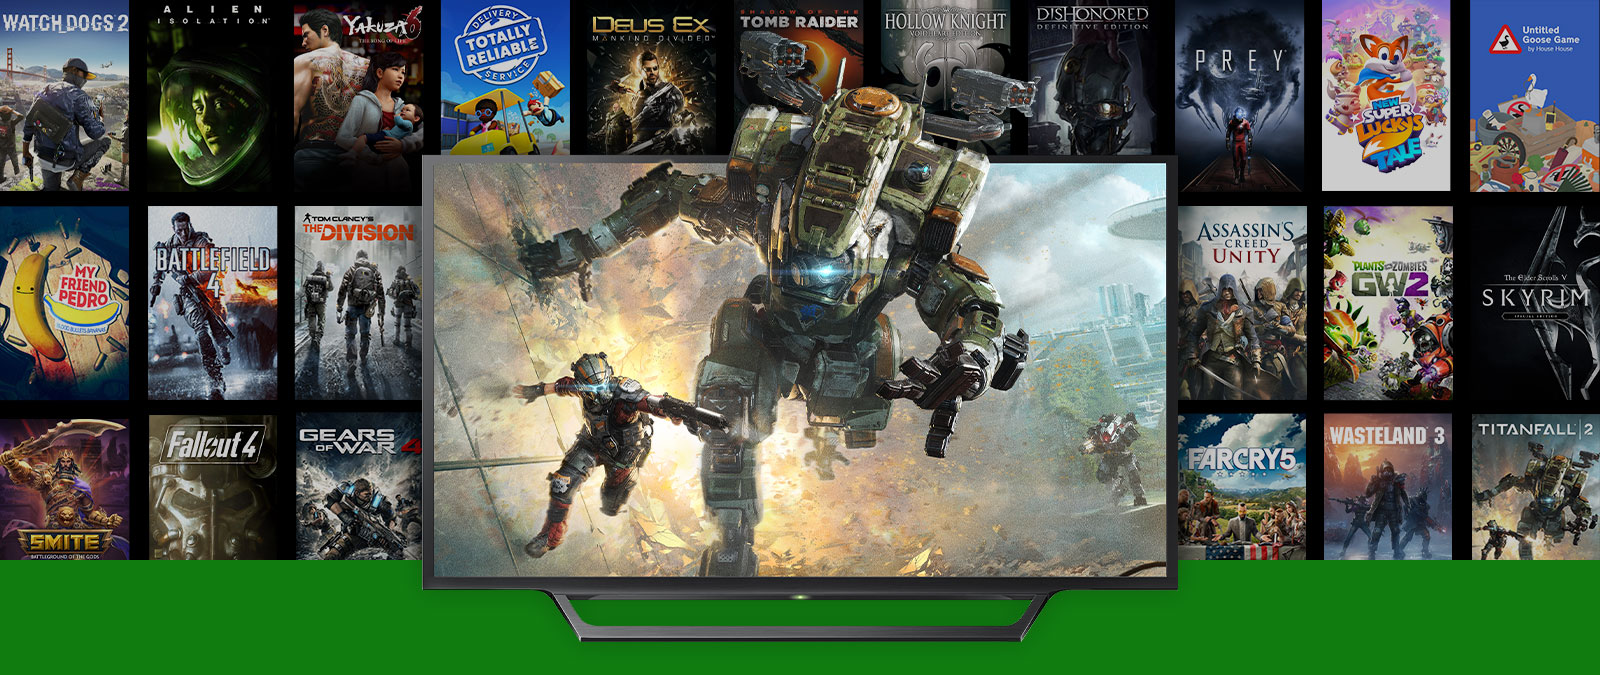 Titanfall 2-karakterer springer ud af et tv med flere coverbilleder af bagudkompatible FPS-boostede spil i baggrunden